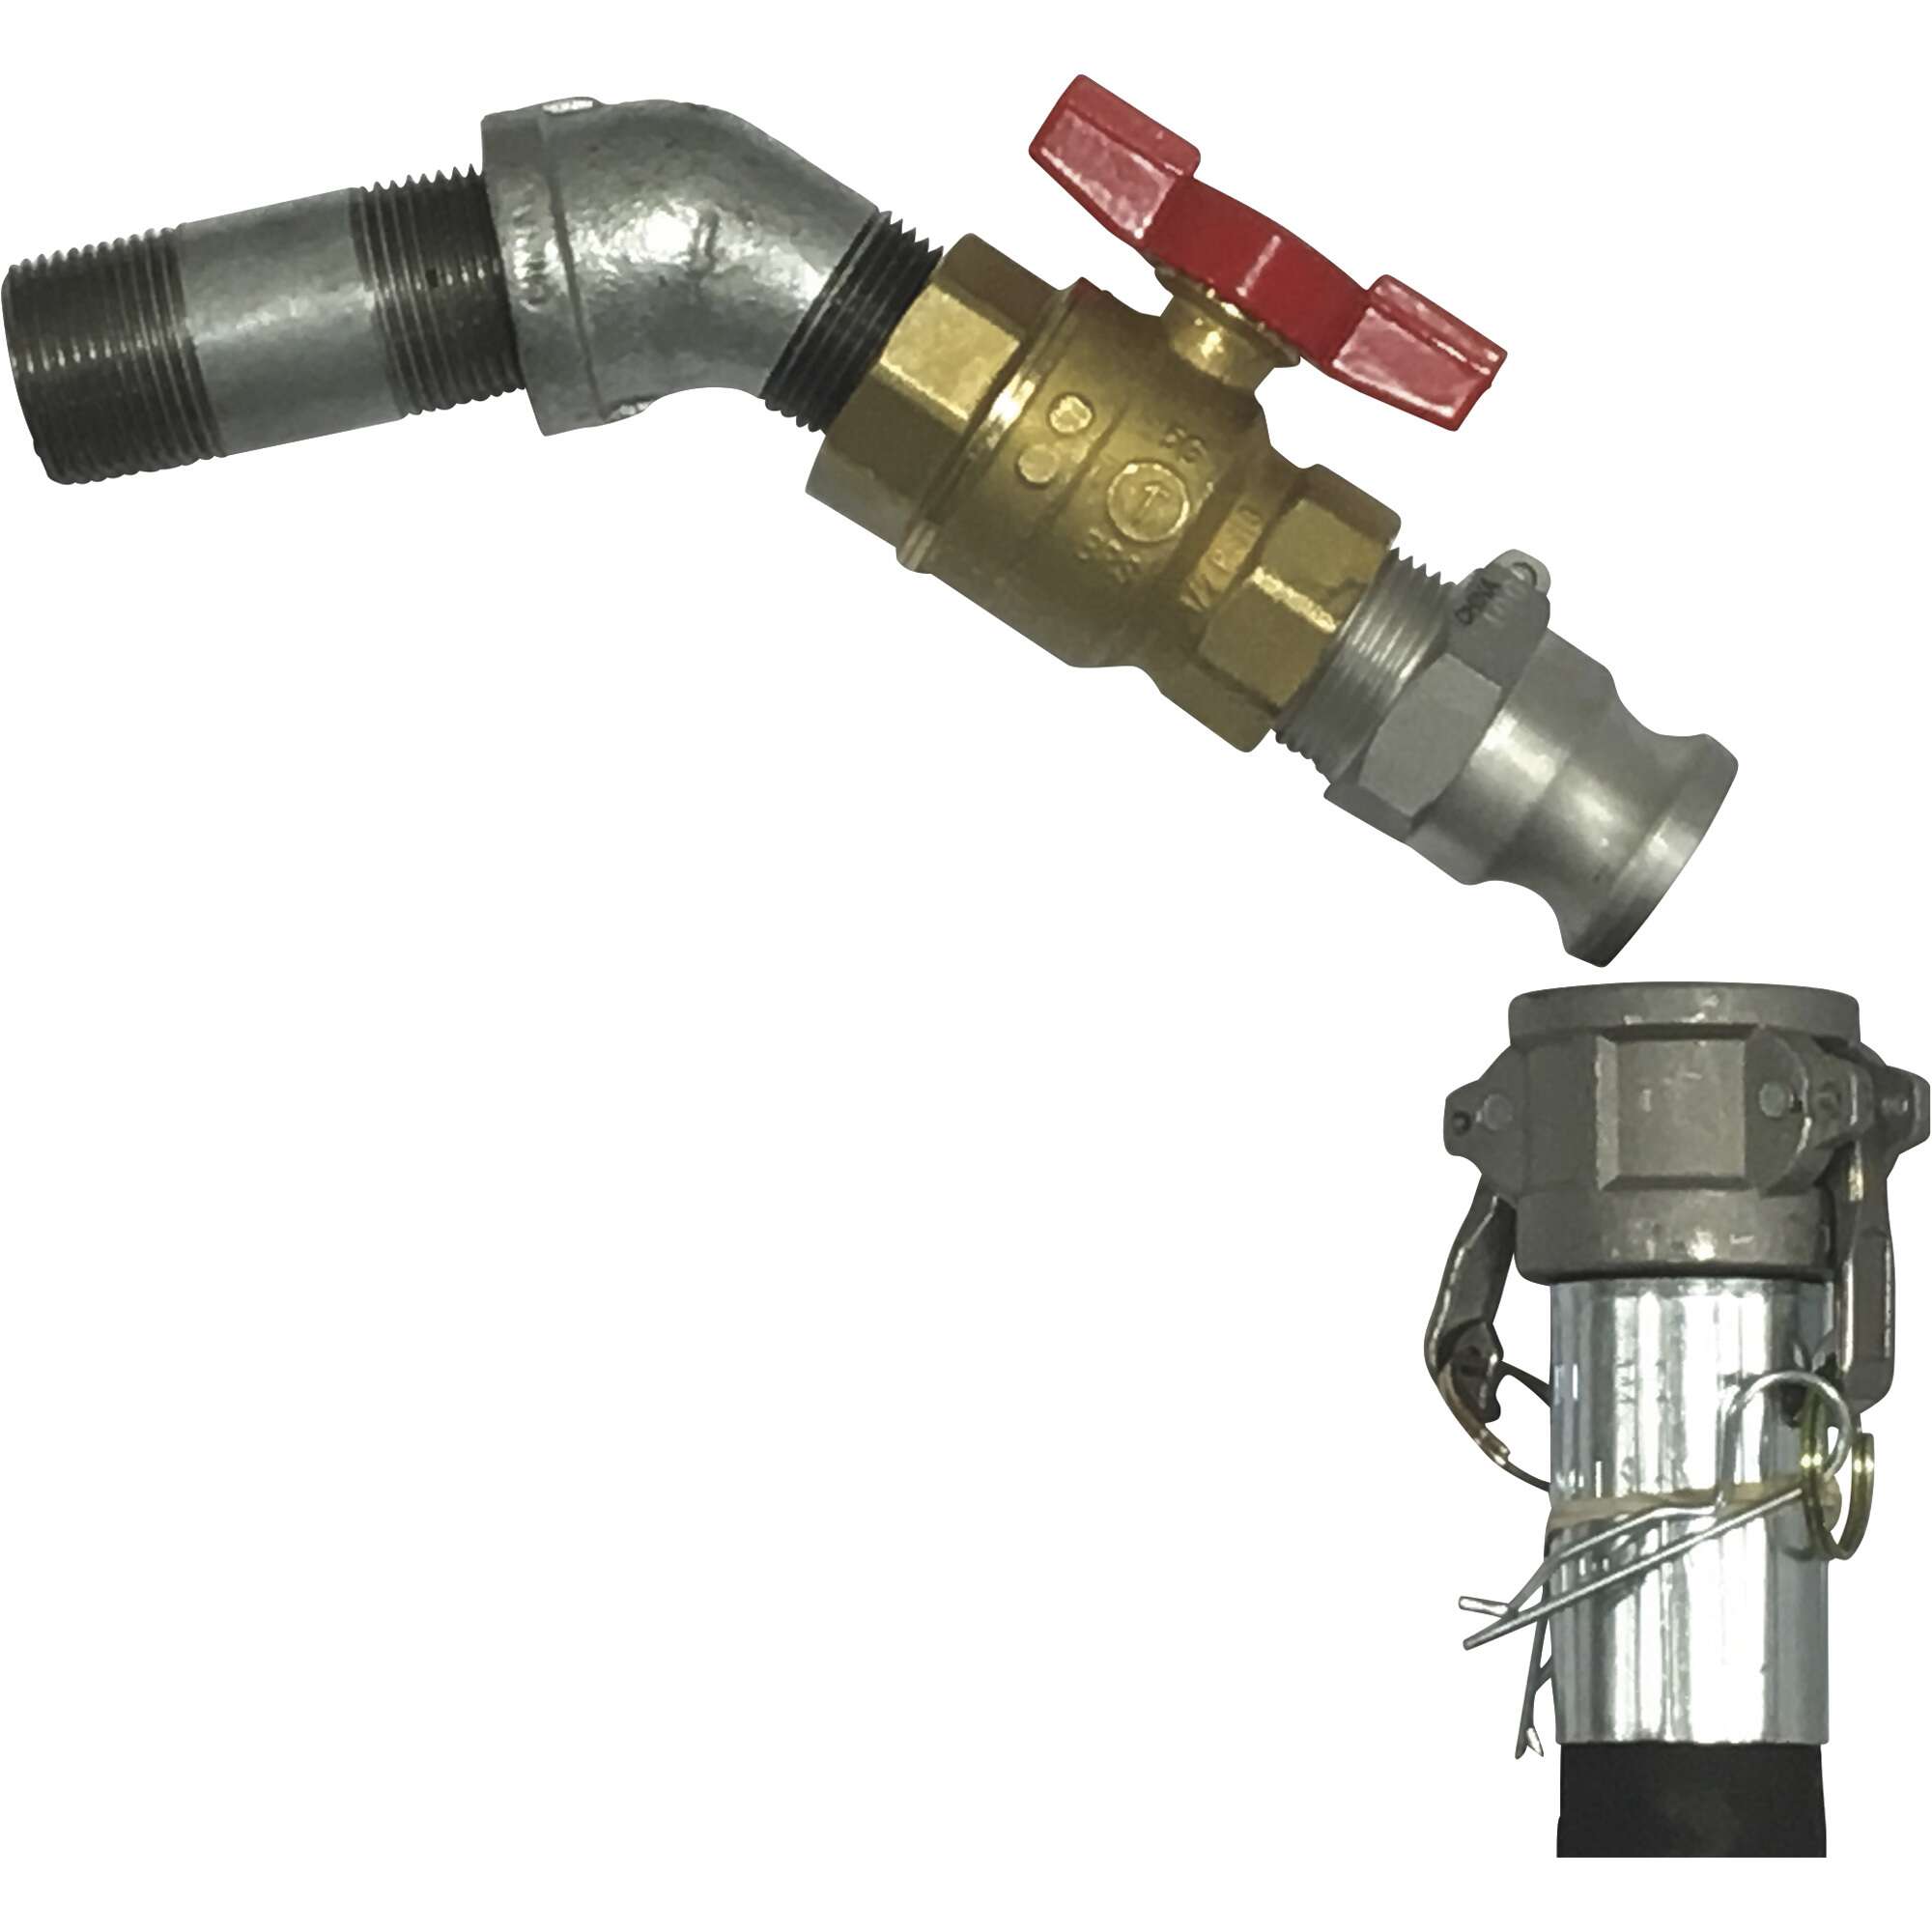 Roughneck 120V Fuel Transfer Pump 22 GPM